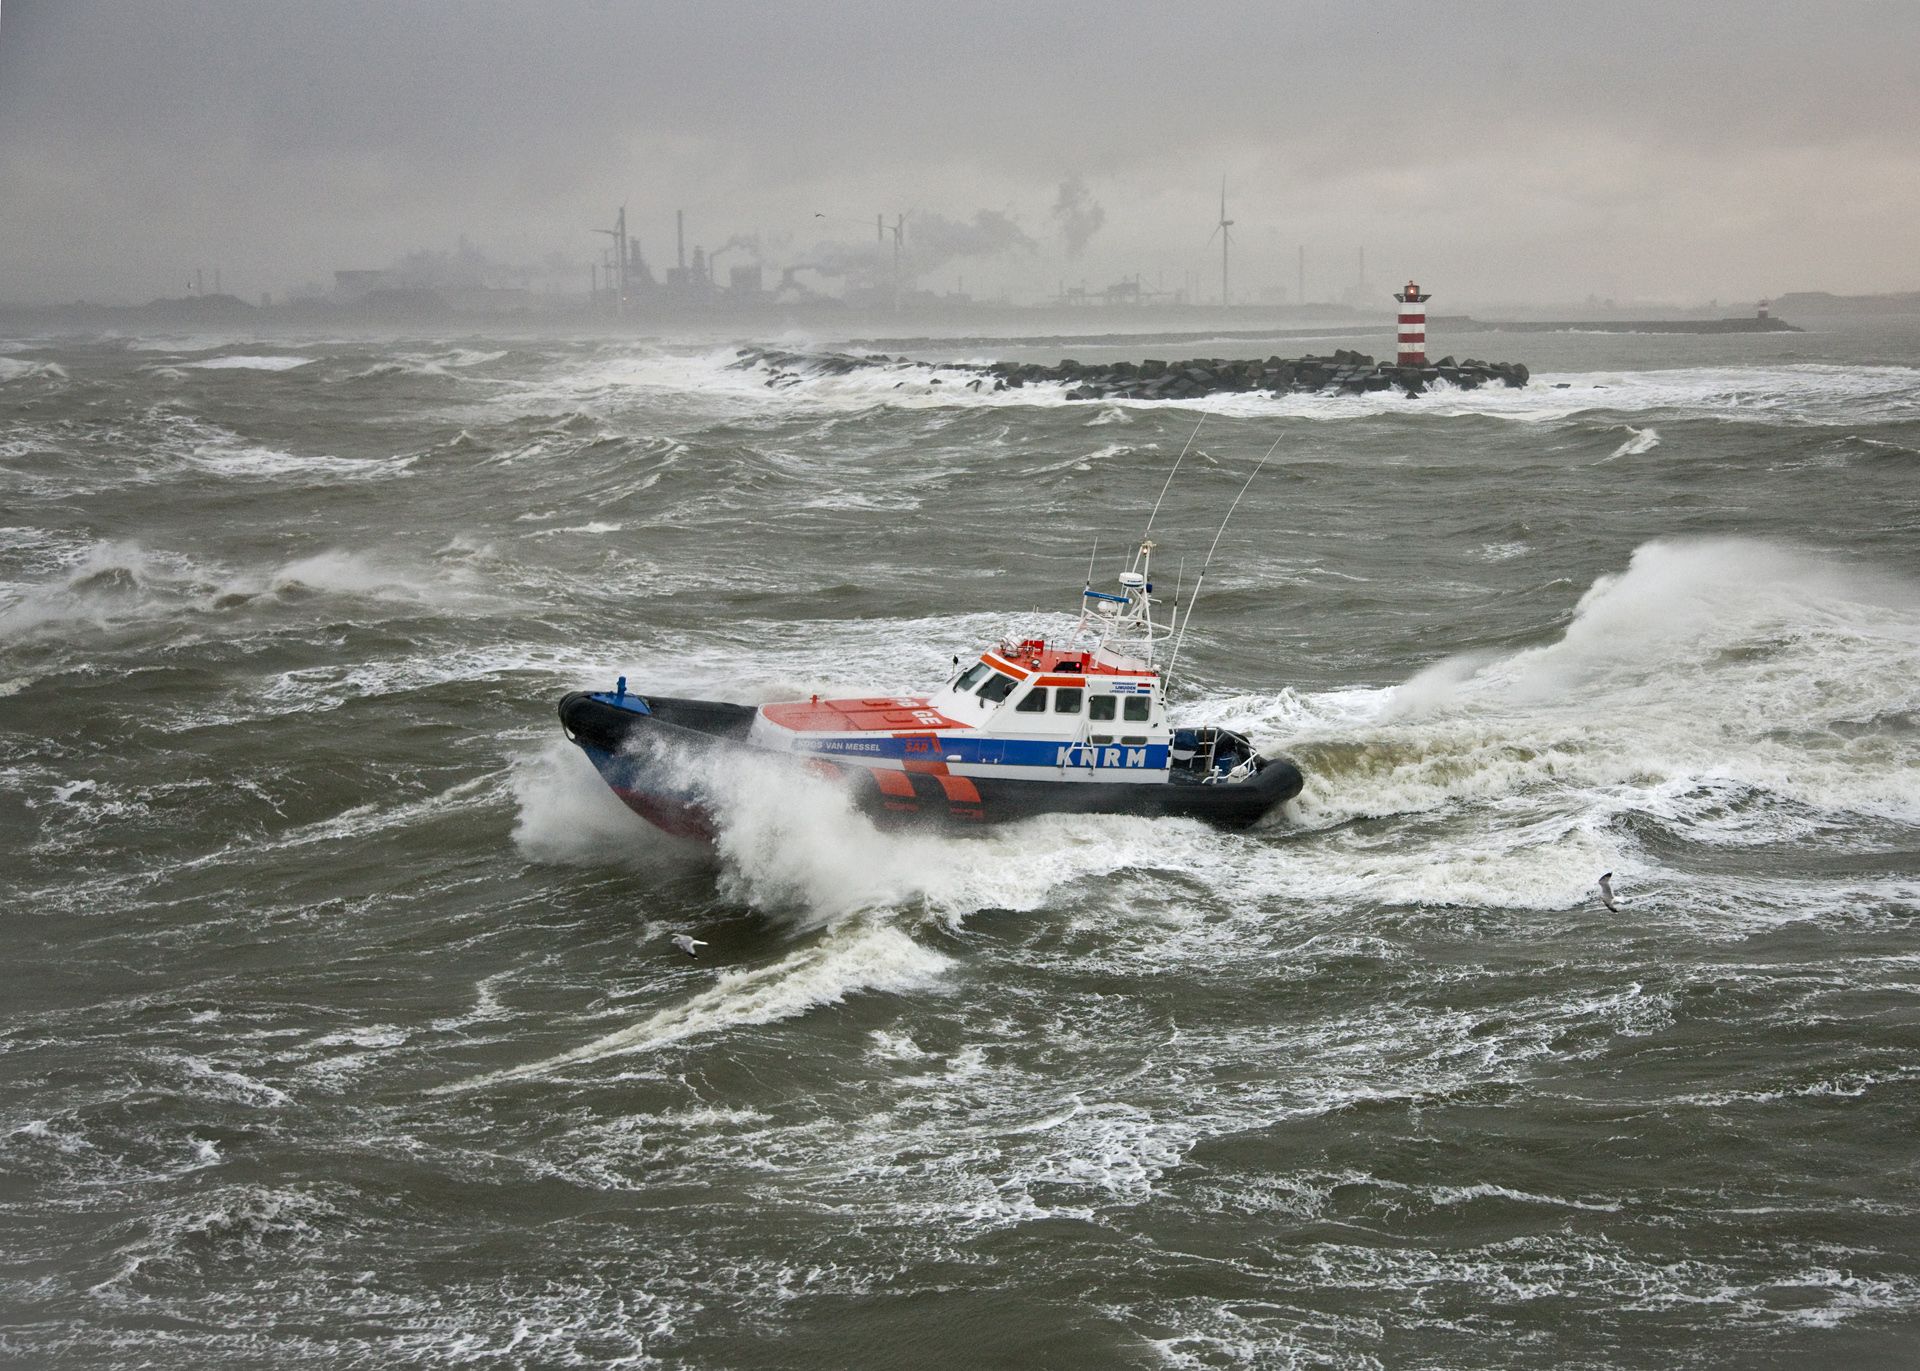 Reddingboot Koos van Messel in slecht weer voor de Noordpier van IJmuiden. Fotograaf: Flying Focus.